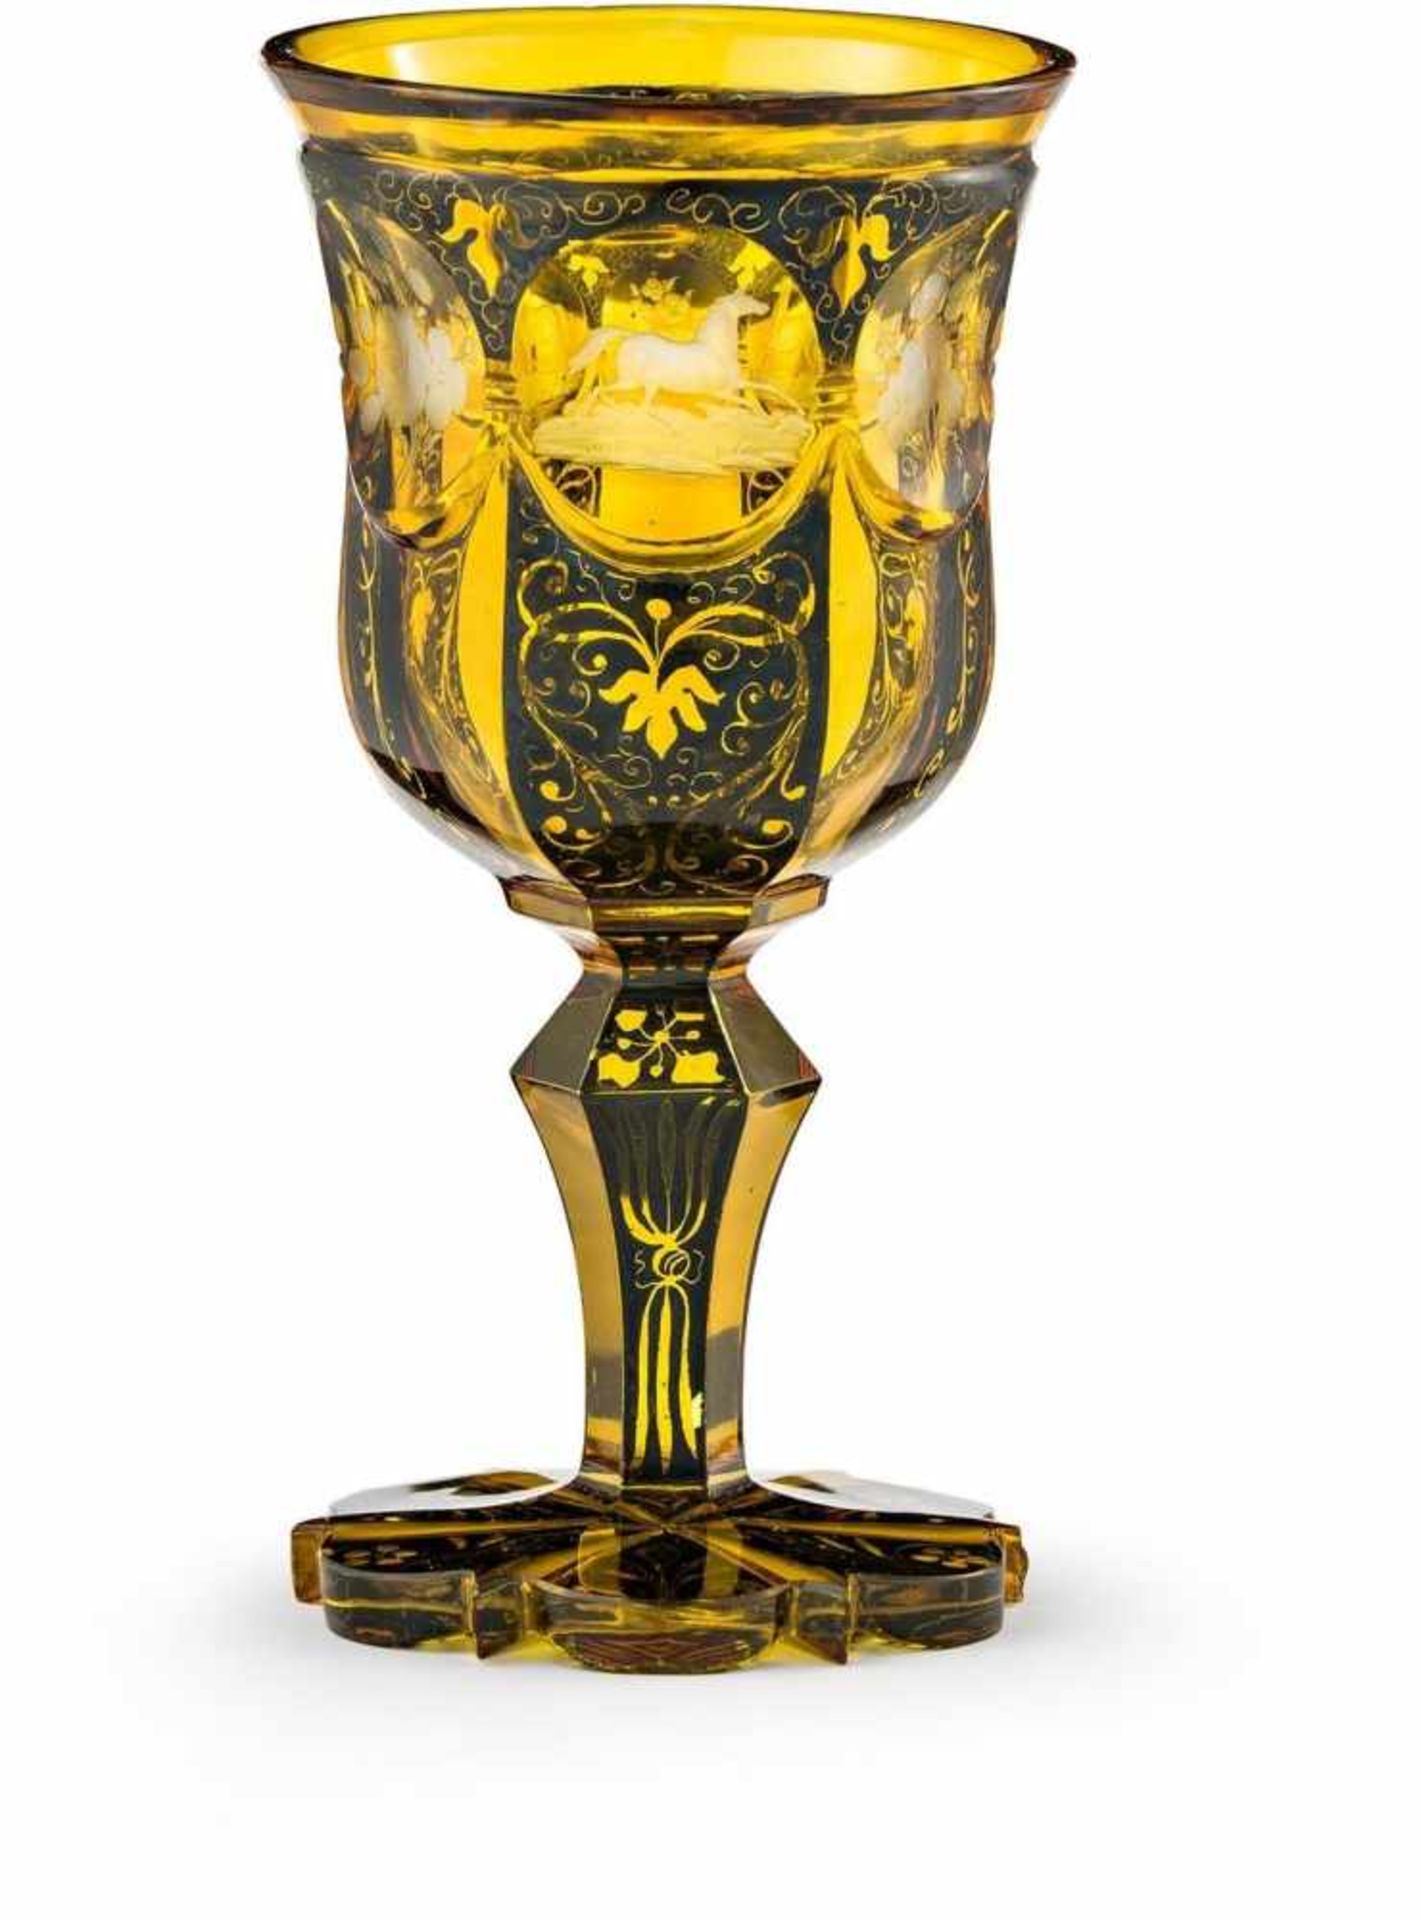 Pokal mit drei PferdenNordböhmen, um 1845Farbloses Glas, geschliffen, silbergelb gebeizt,